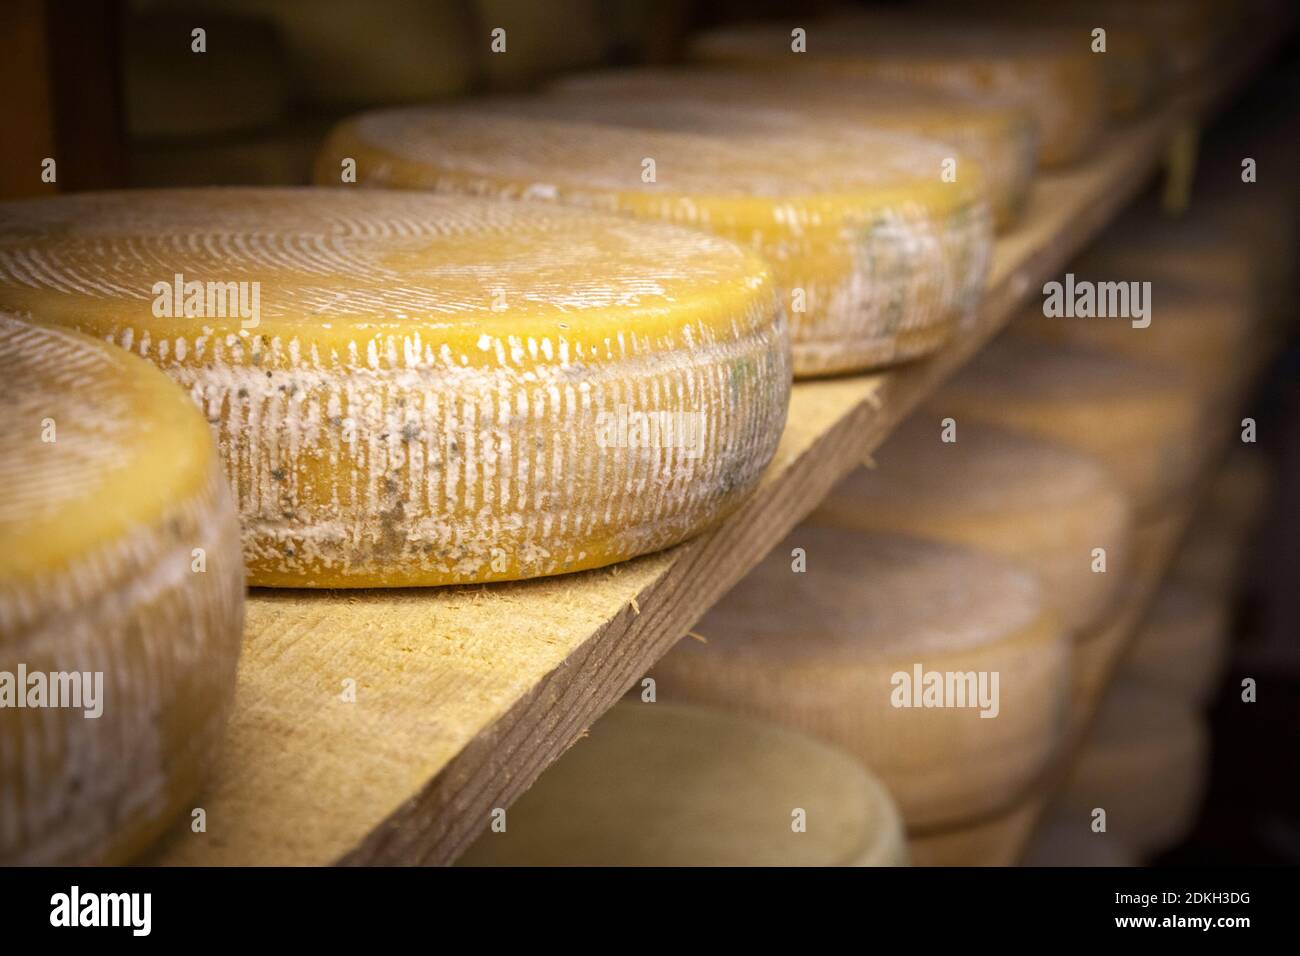 Italie, Vénétie, Belluno, Seren del Grappa, fromages typiques (Morlacco et Bastardo del Grappa) dans la cave pour le vieillissement Banque D'Images